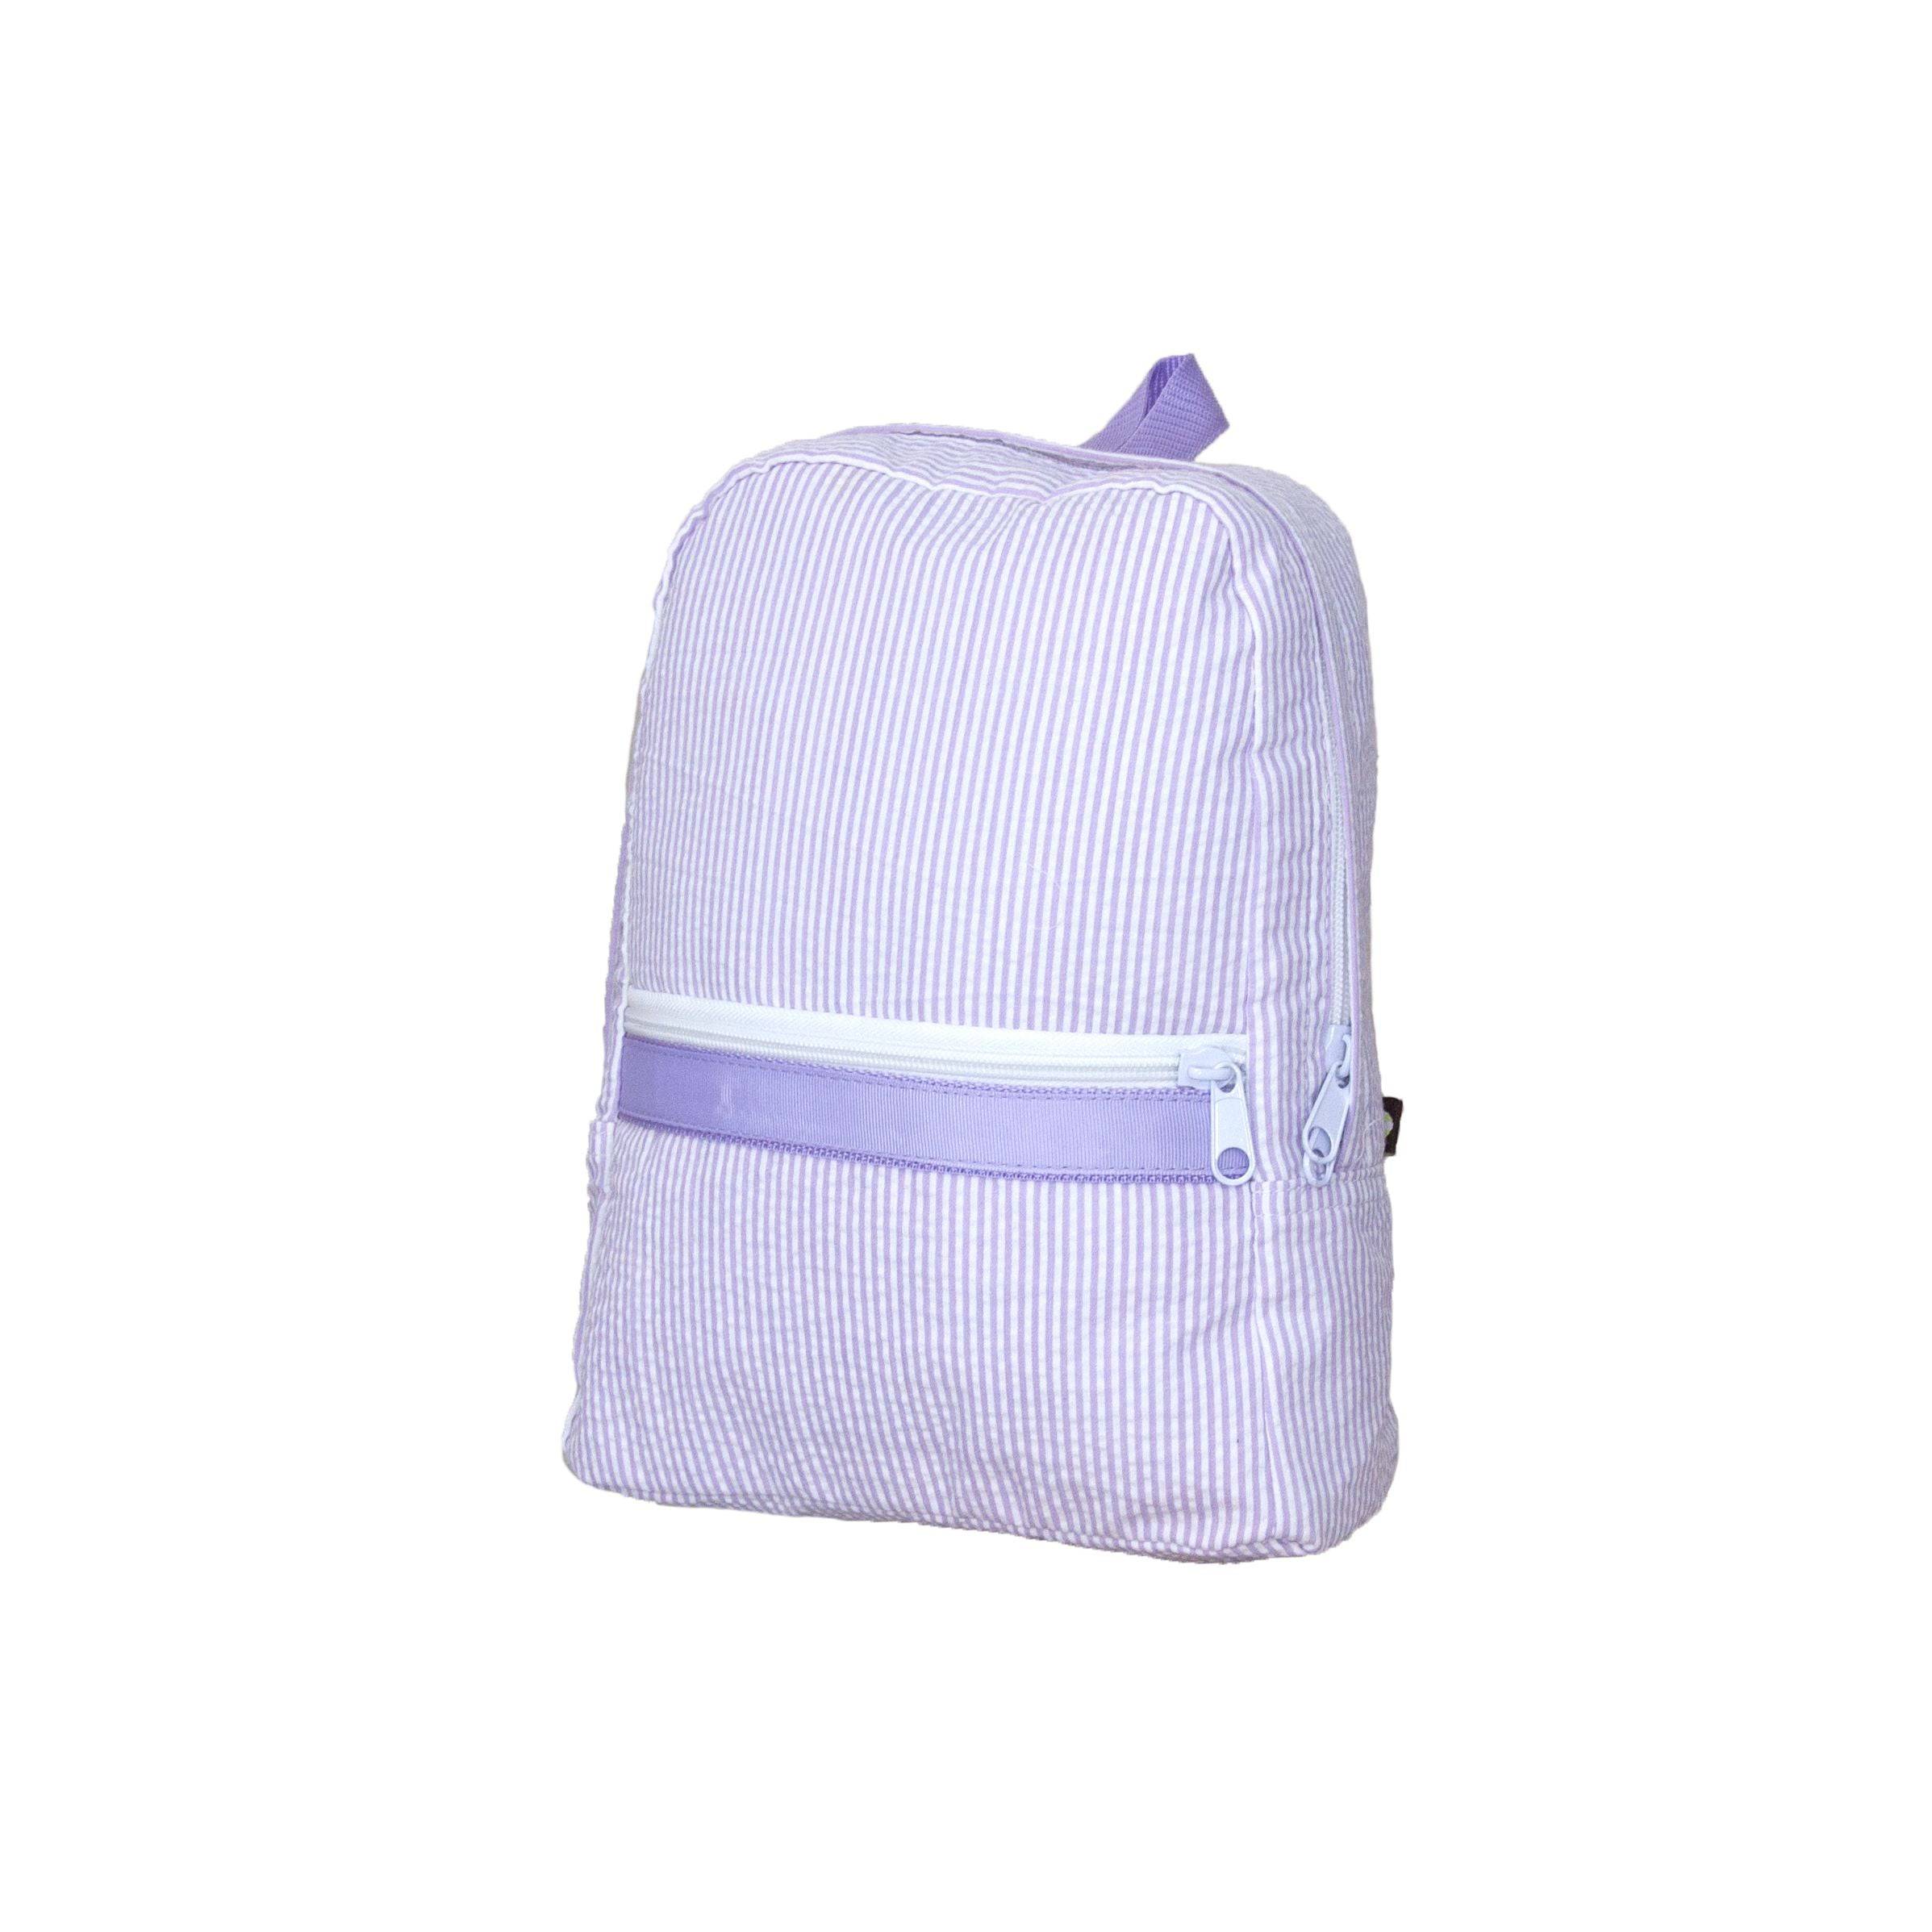 Lilac Seersucker Small Backpack - Twinkle Twinkle Little One